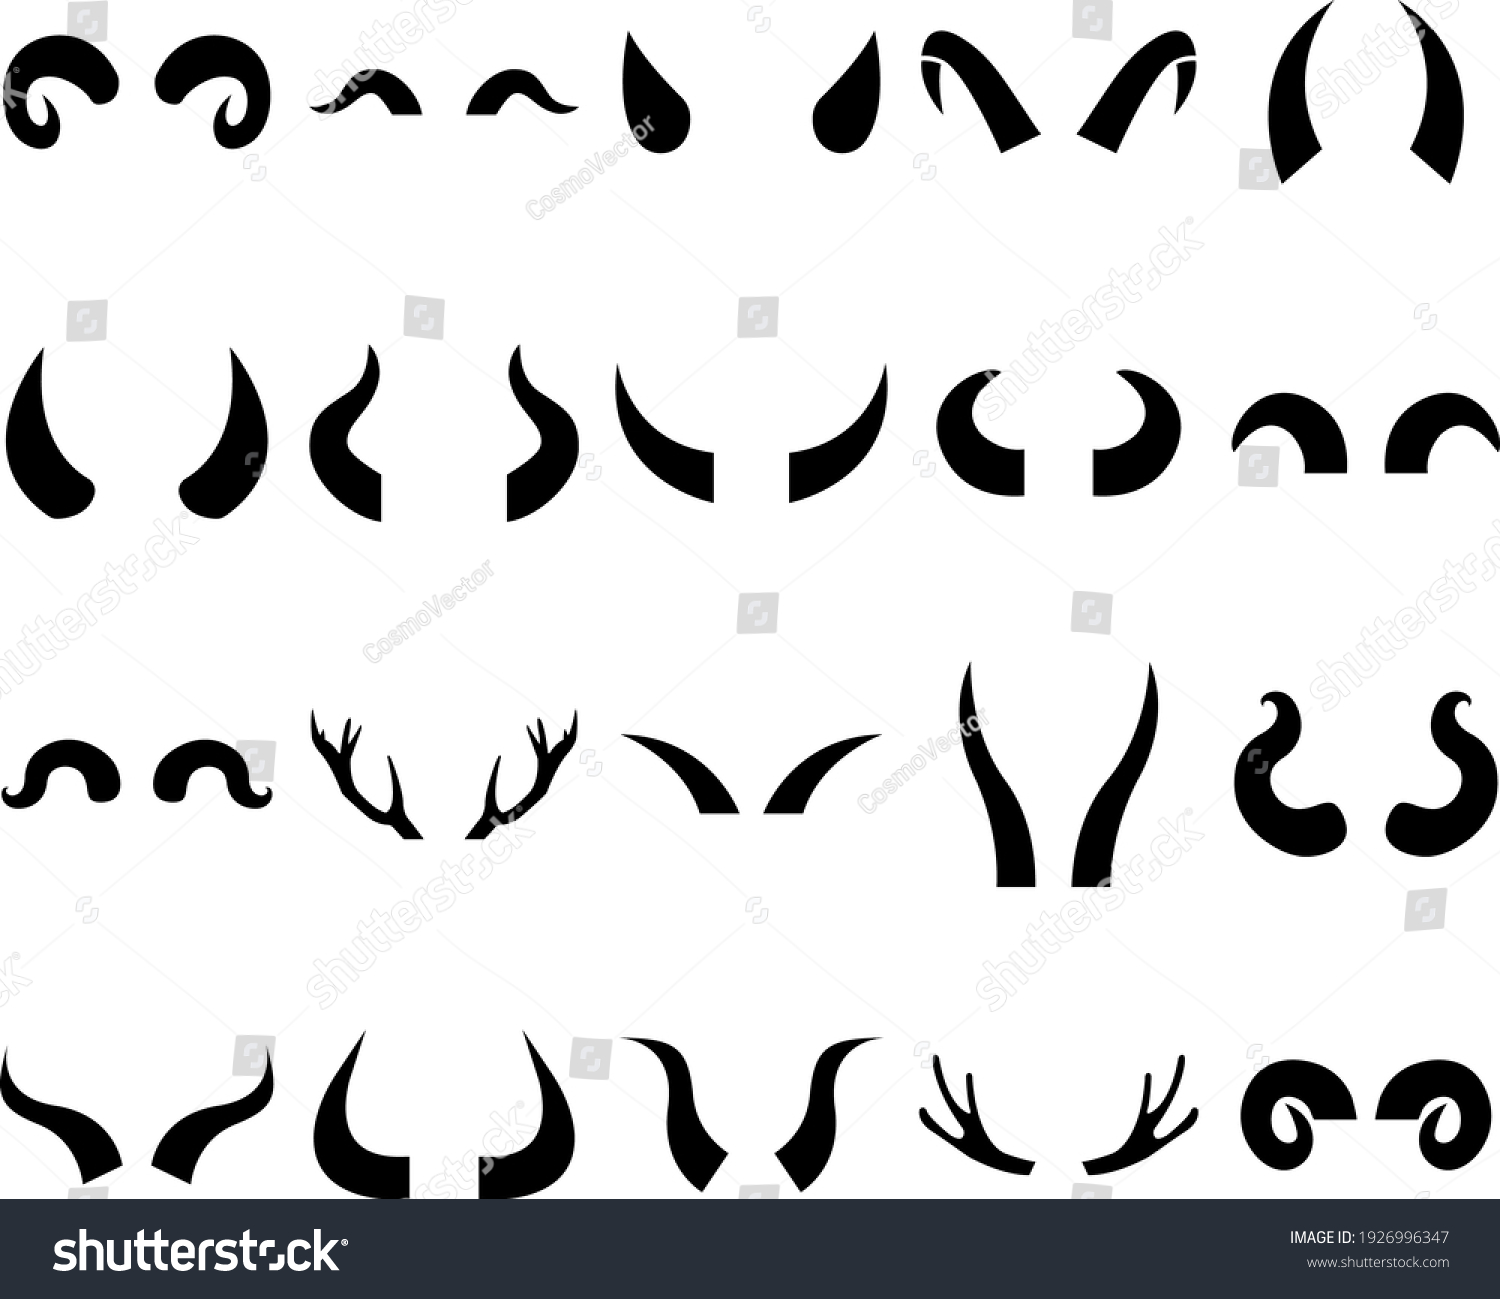 Animal horns icon, logo isolated on white background #1926996347